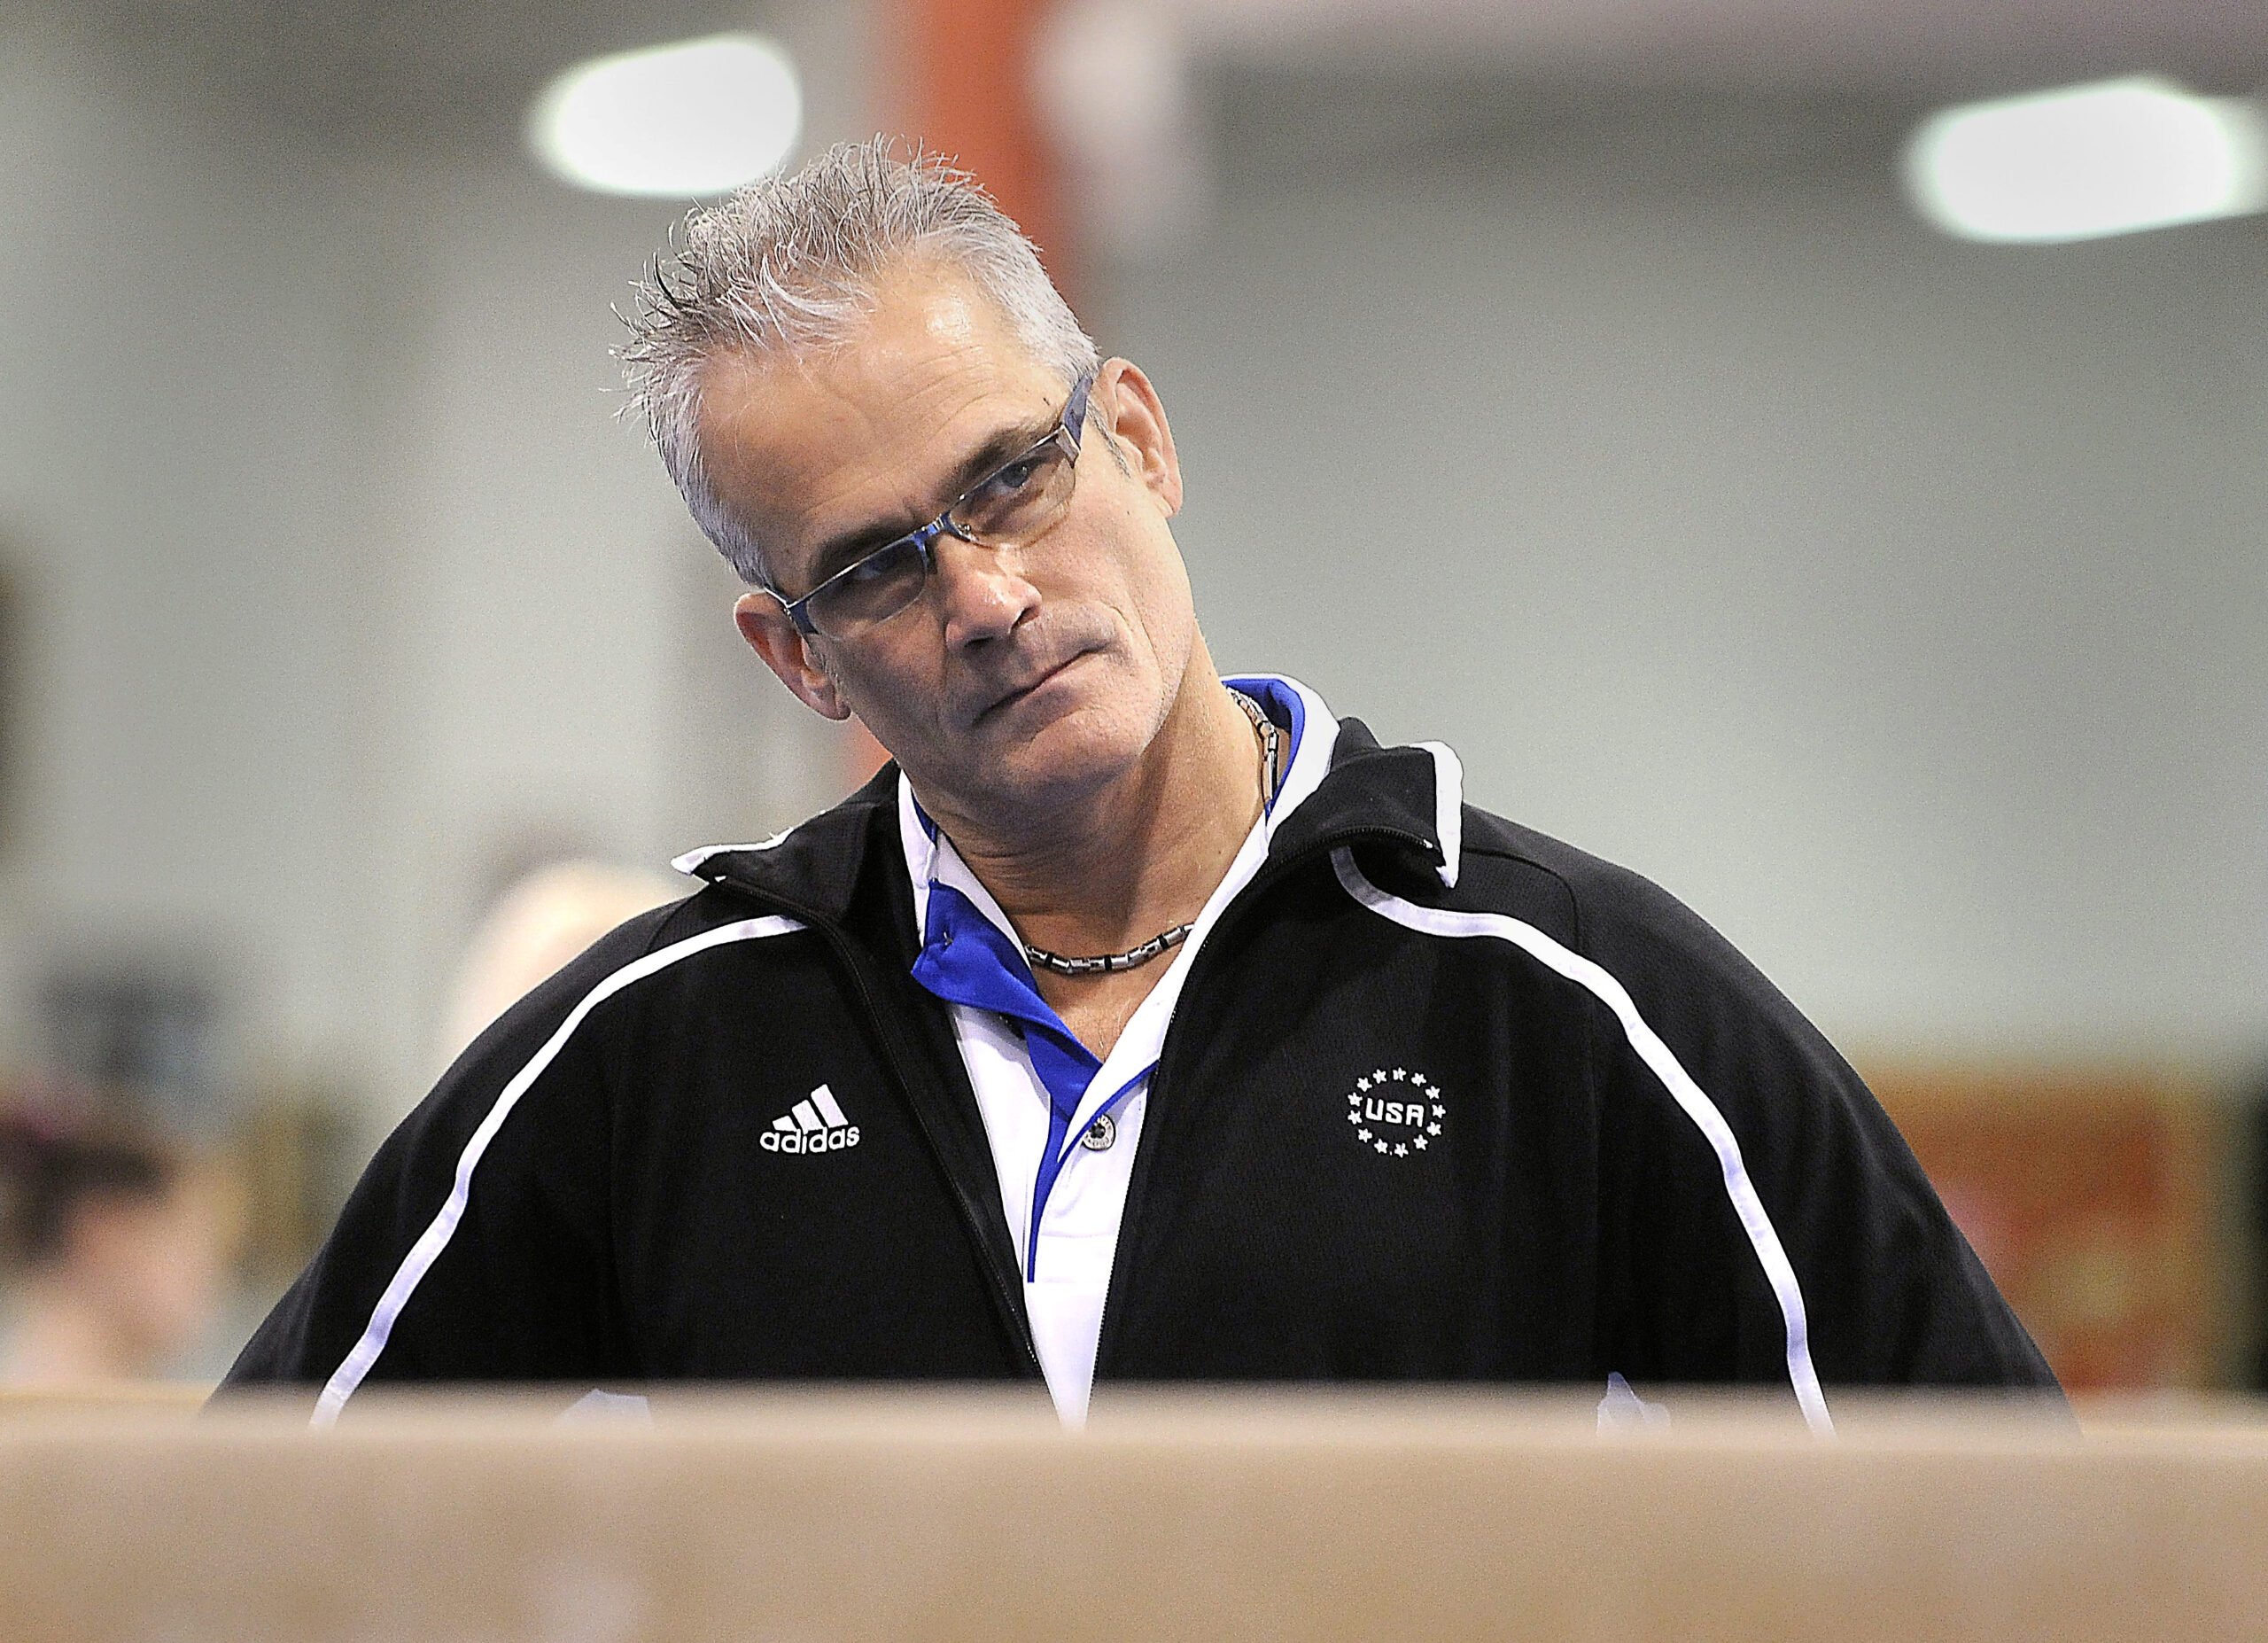 Ο πρώην προπονητής των Ολυμπιακών Αγώνων των ΗΠΑ αυτοκτονεί λίγες ώρες μετά την κατηγορία του